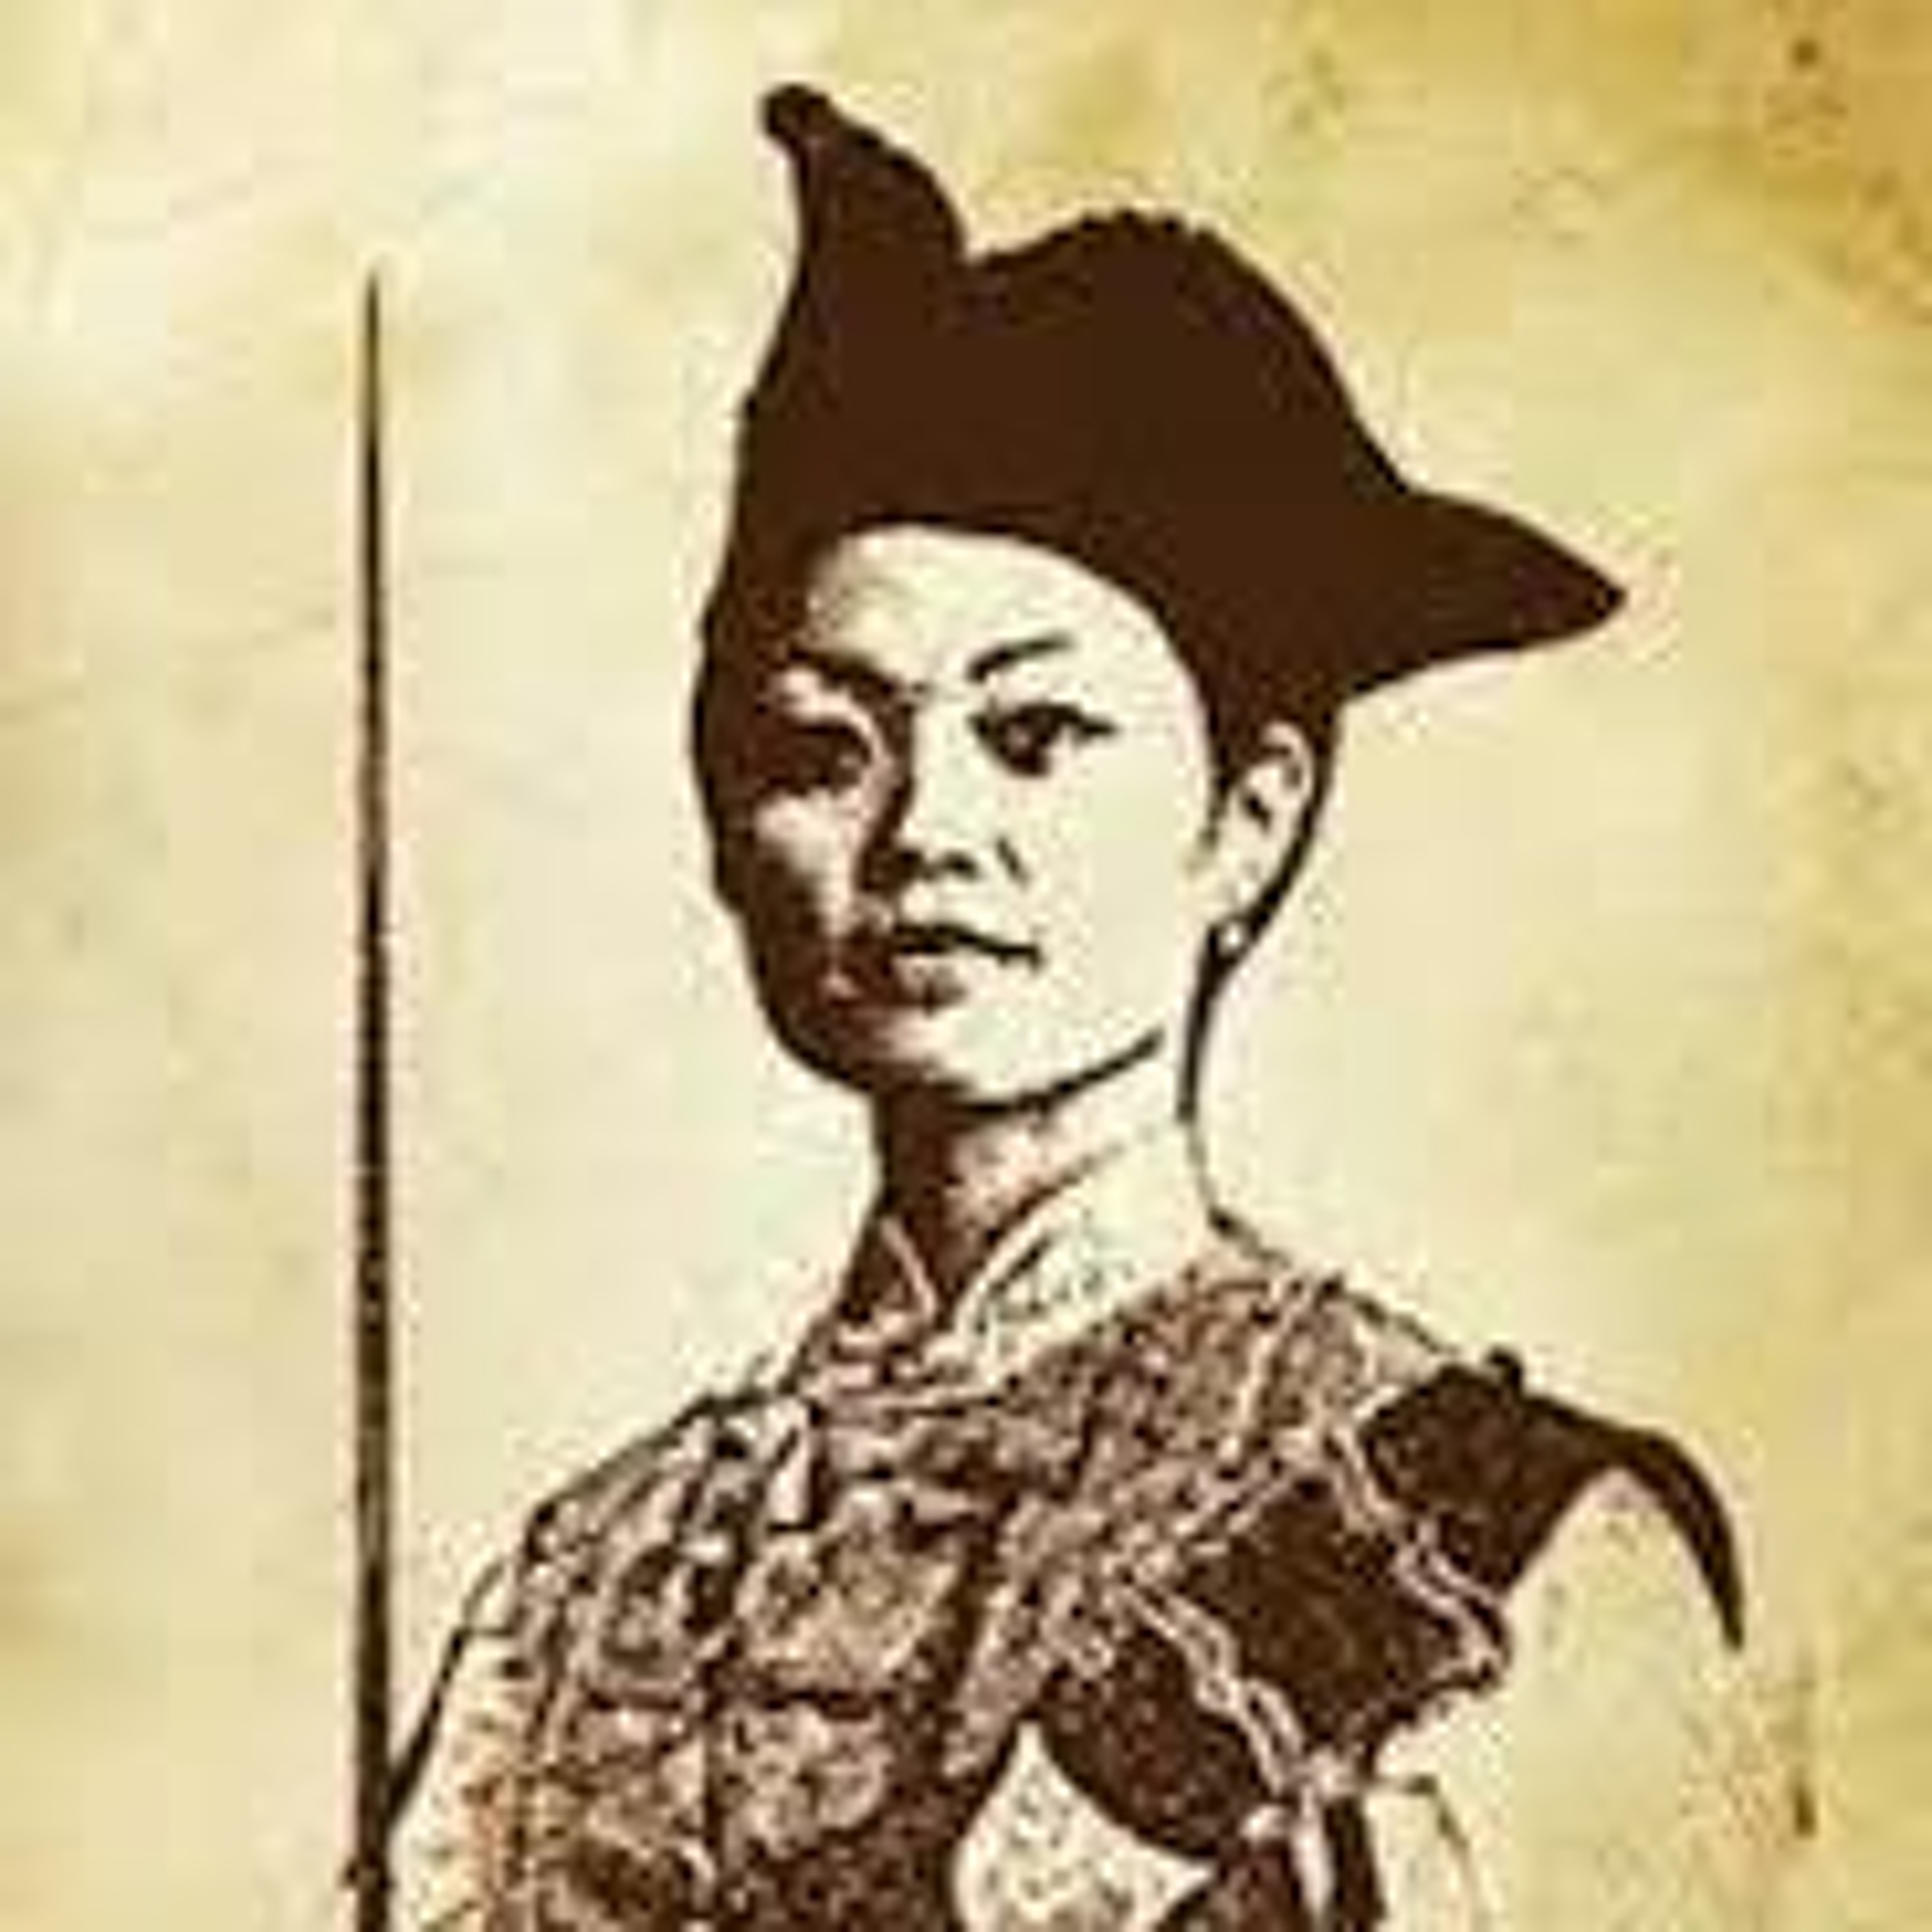 Episode 254 - Zheng Yi Sao, The Pirate Queen of China